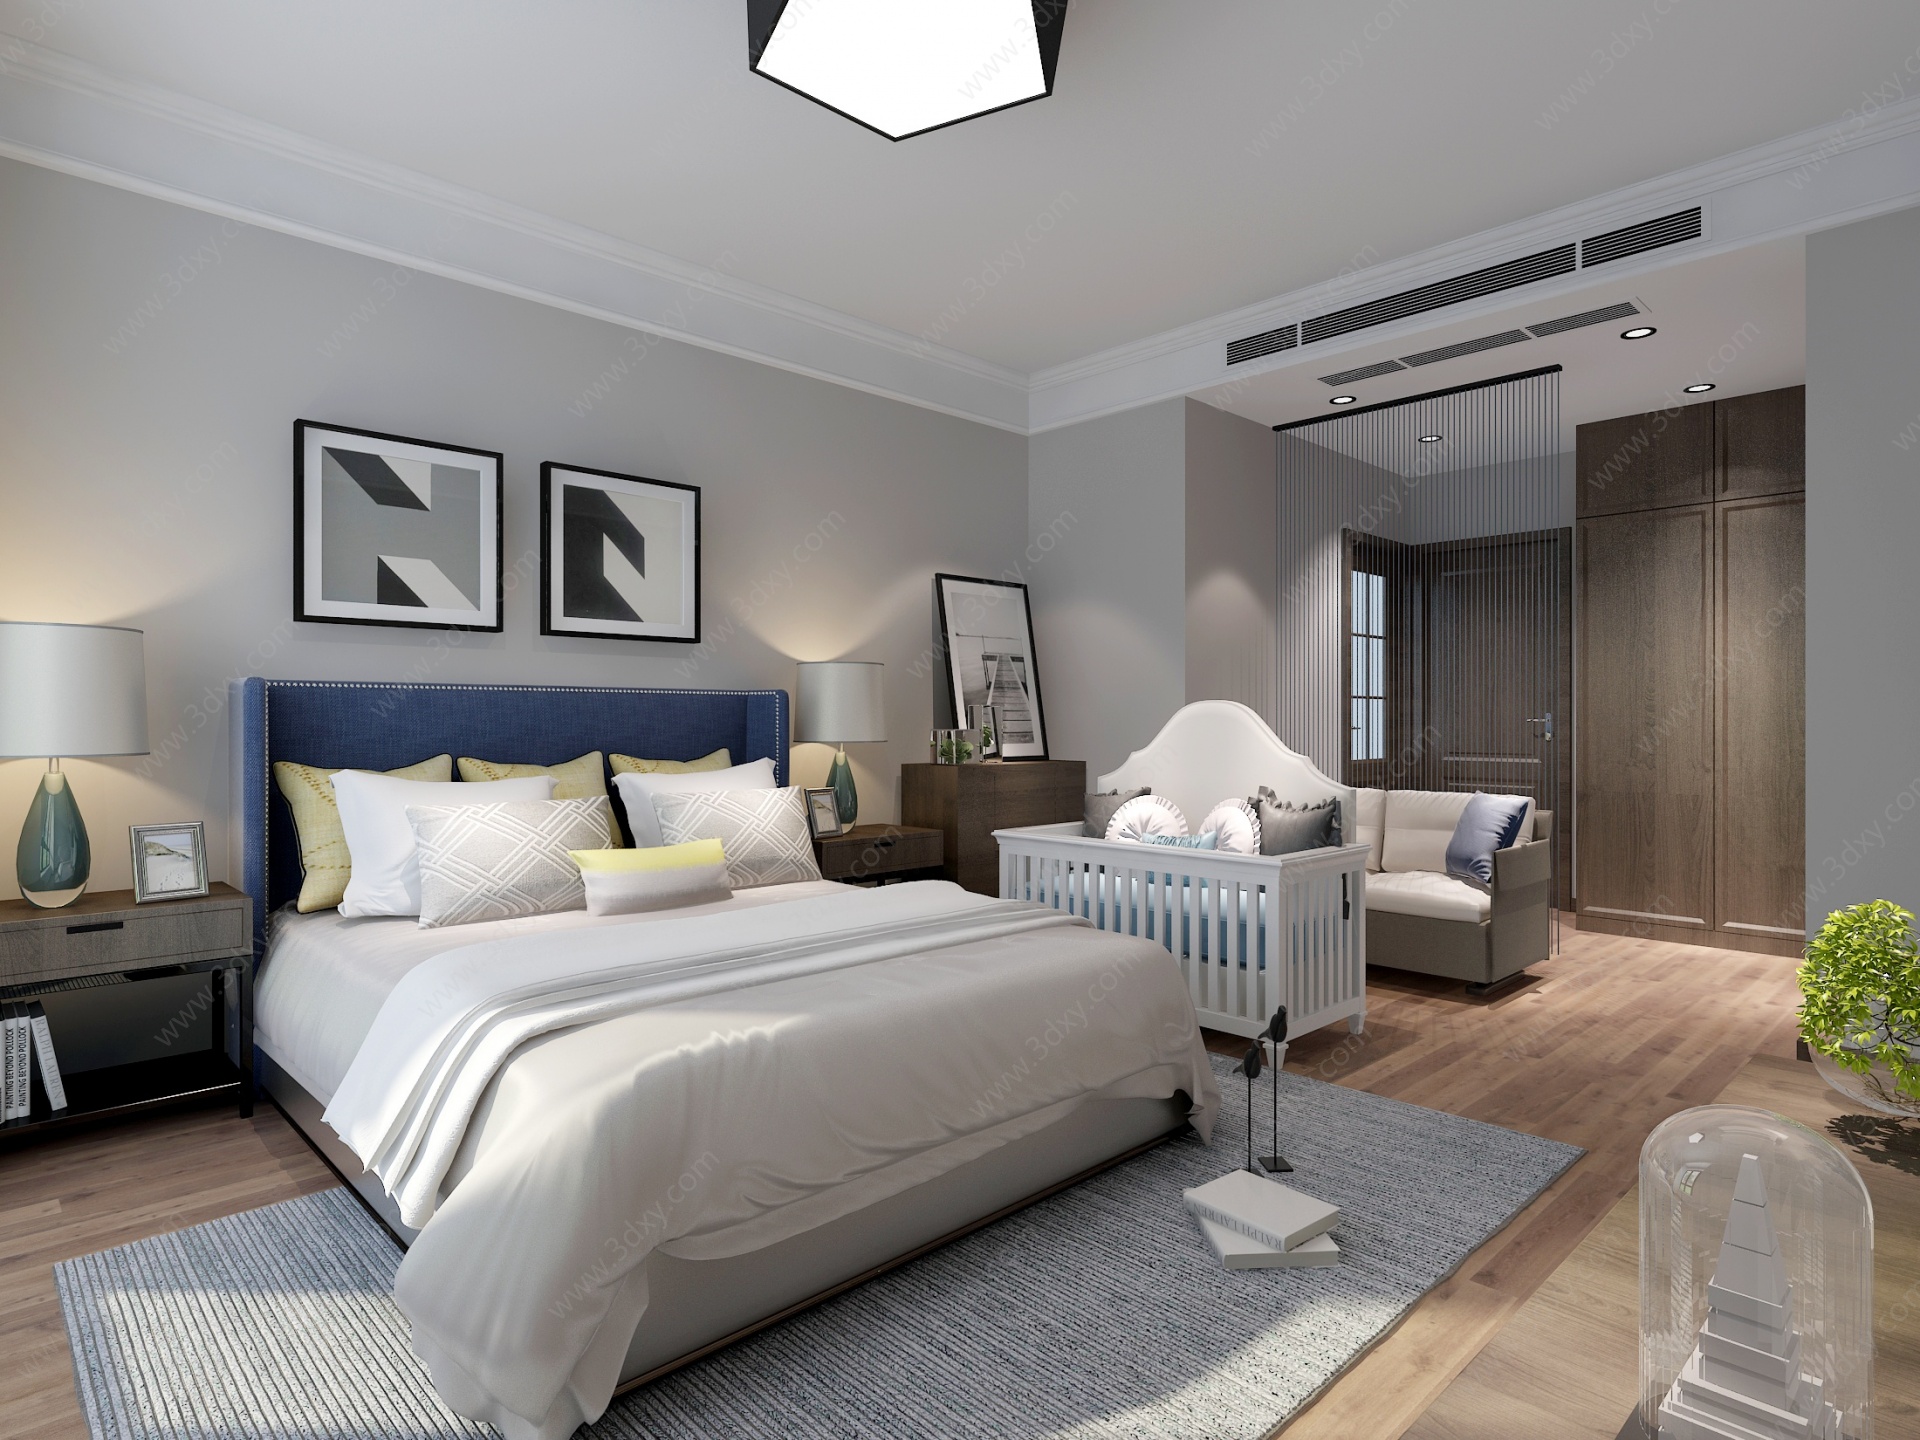 现代卧室房间3D模型